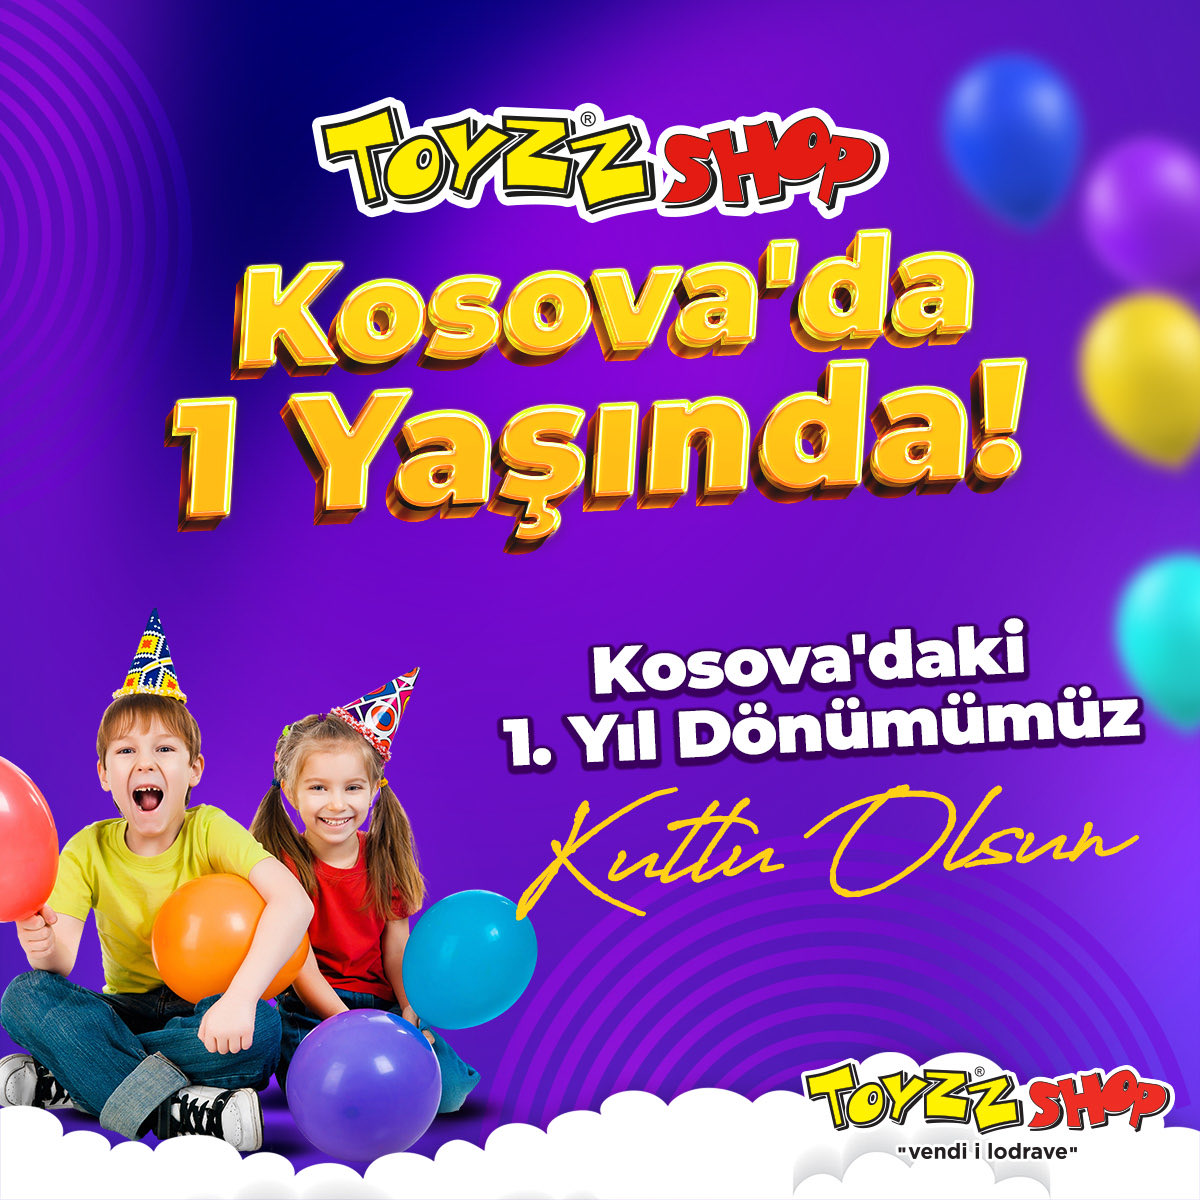 Kosova’daki 1.Yıl Dönümümüz Kutlu Olsun … 🎉🤩 • • #toyzzshop #adresbelli #oyuncakçınızz